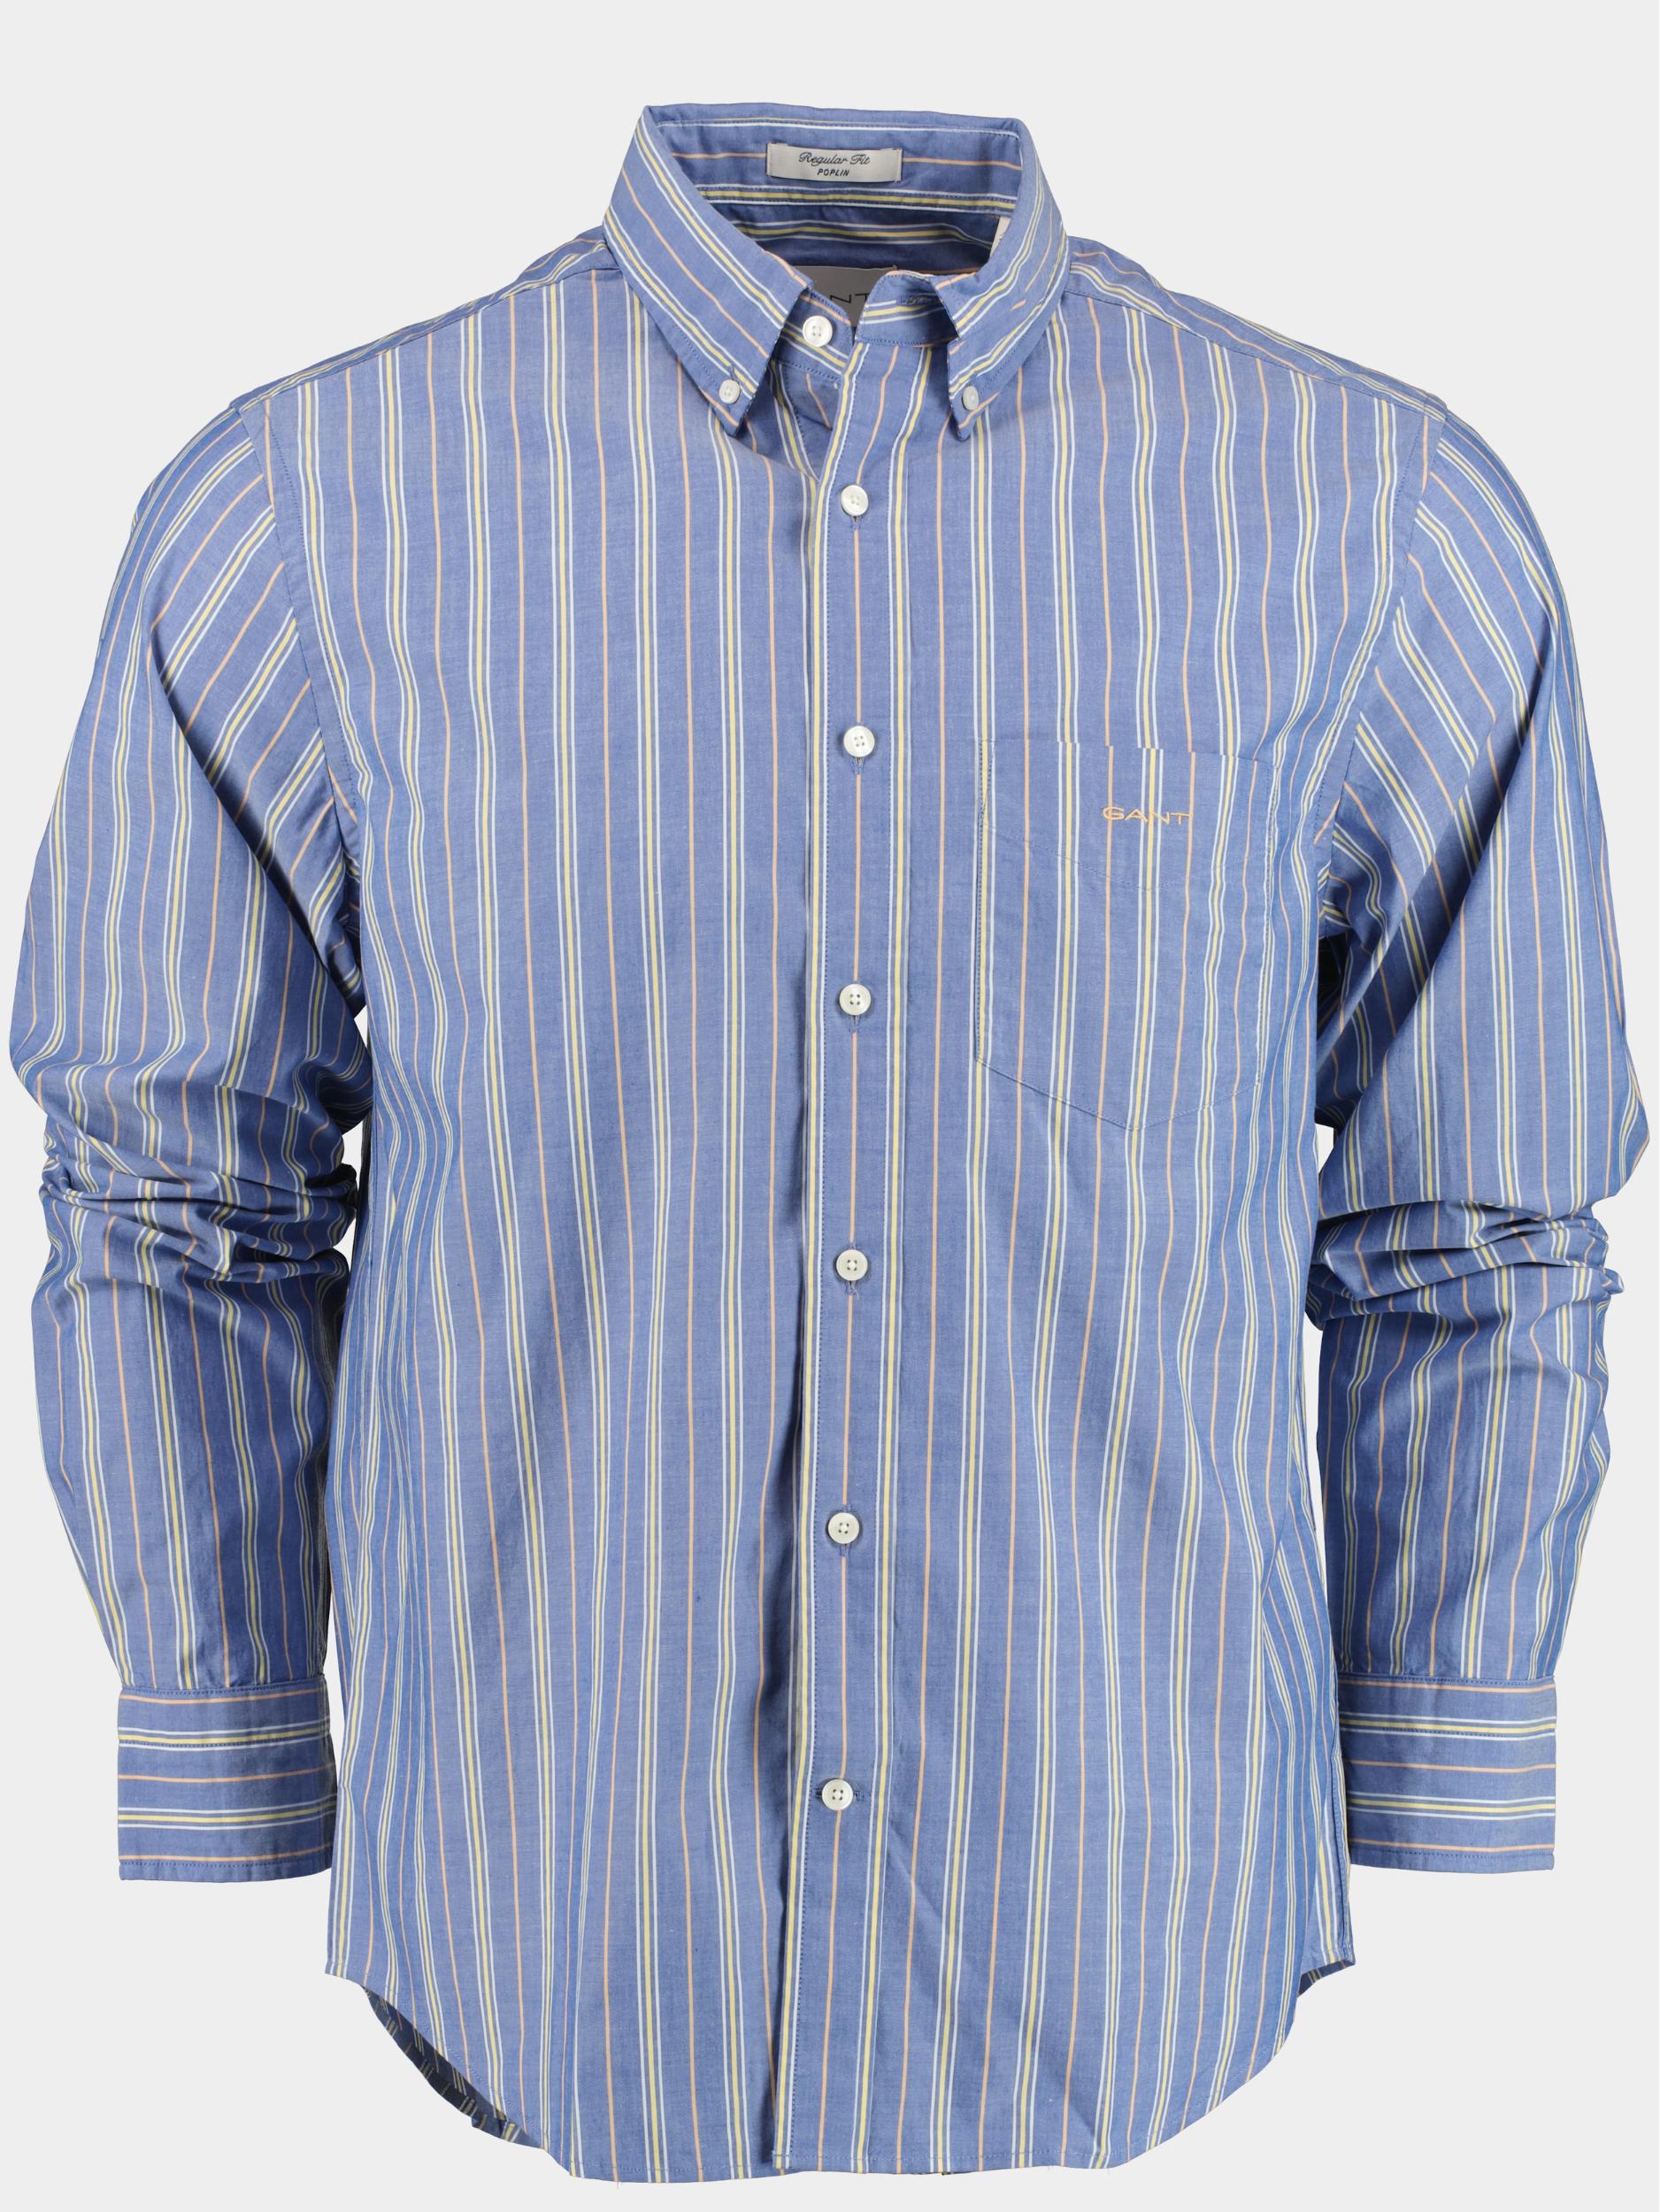 Gant Casual hemd lange mouw Blauw reg ut poplin stripe shirt 3230146/436